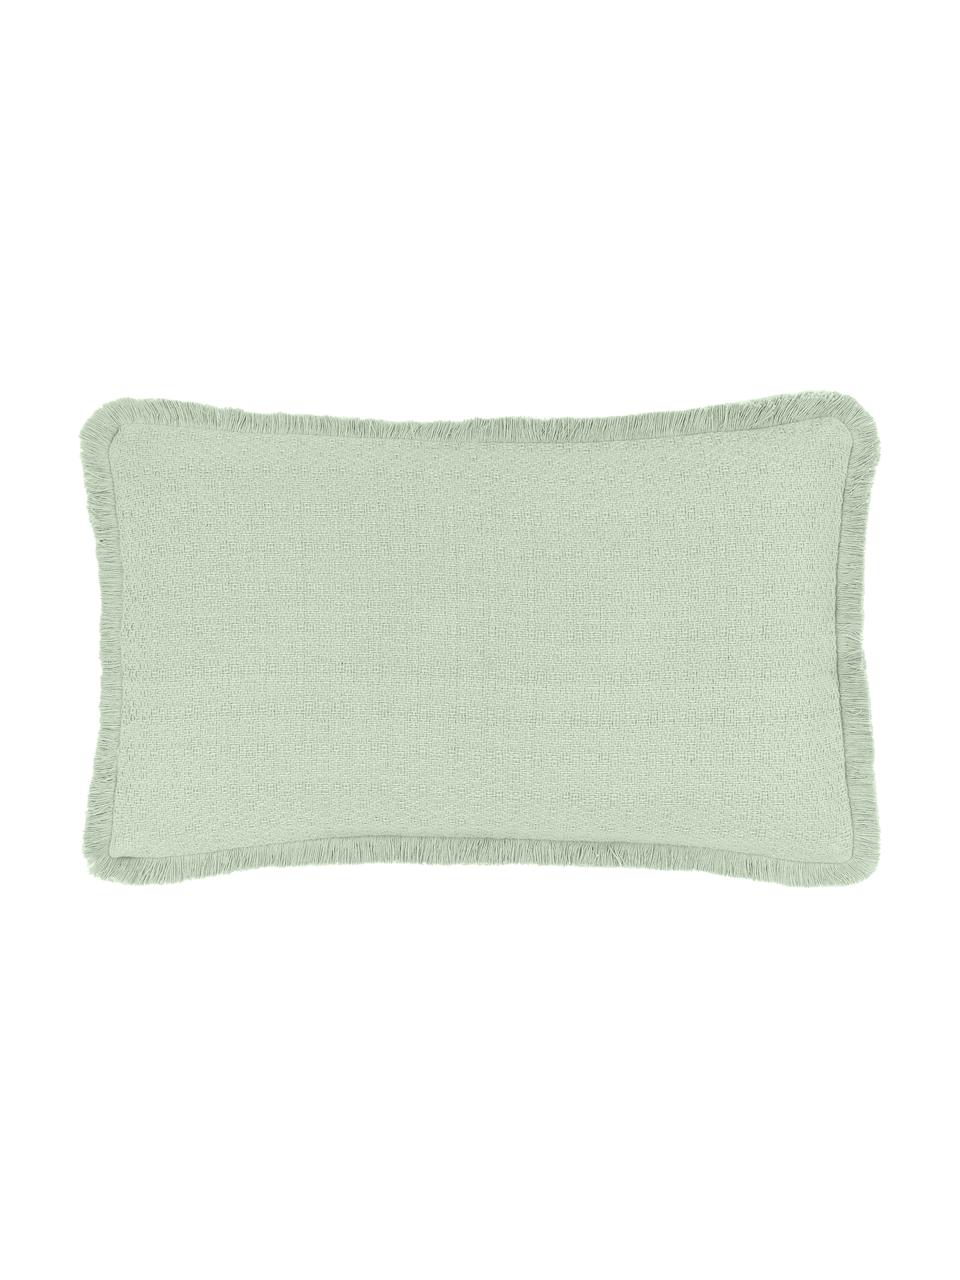 Housse de coussin rectangulaire vert, réversible Loran, 100 % coton, Vert, larg. 30 x long. 50 cm